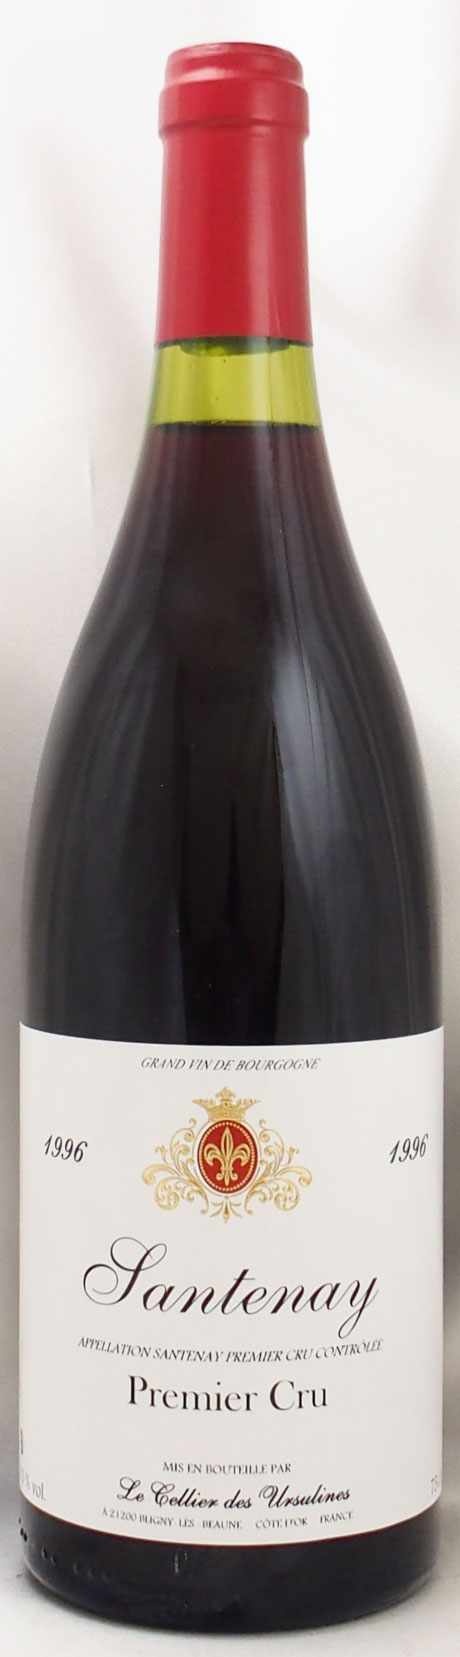 1996年 サントネー プルミエ クリュ セリエ デ ウルシュリーヌsantenay Premier Cru Rouge Cellier Des Ursulinesの販売 ヴィンテージワイン専門店のnengou Wine Com